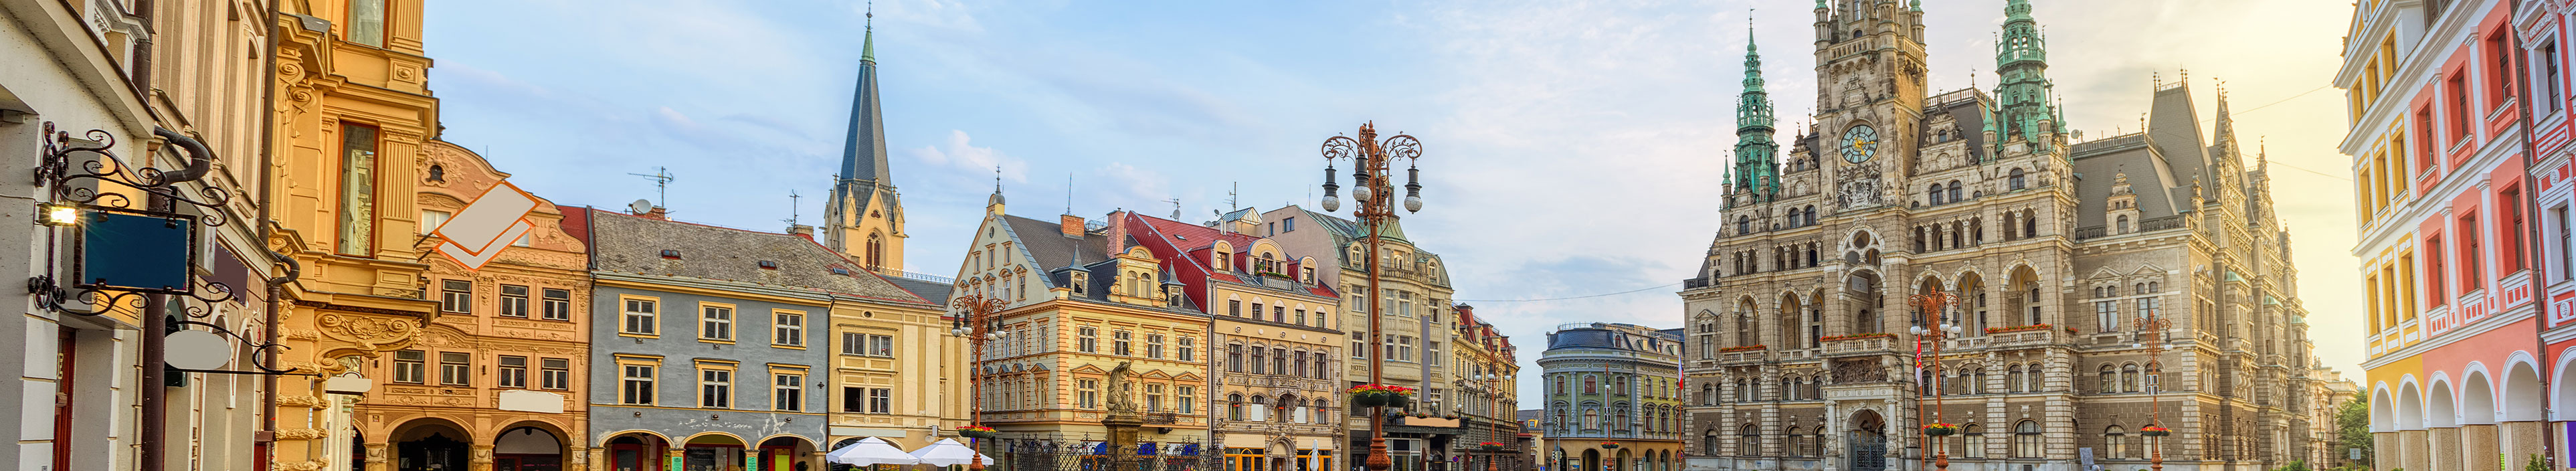 Panoramablick auf den Hauptplatz in Liberec mit dem Rathausgebäude